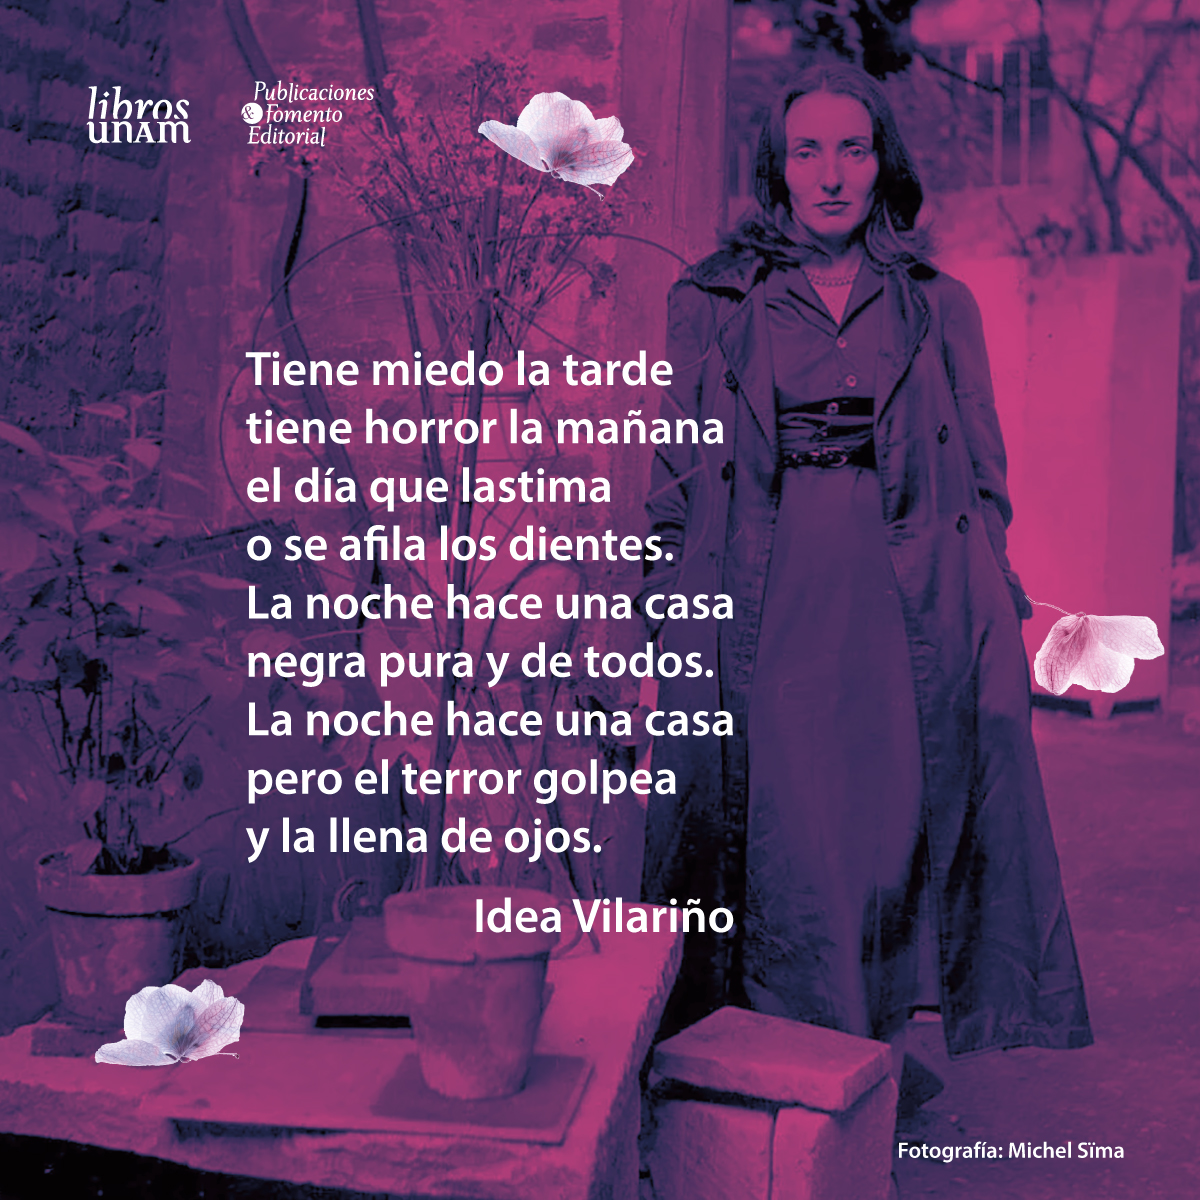 🖤Idea Vilariño fue una poeta, traductora y académica uruguaya, que formó parte de la Generación del 45. 📖«La suplicante» fue su primer poemario, publicado en 1945. 🕯️Conmemoramos su 15° aniversario luctuoso con sus poemas en #MaterialDeLectura ➡️ bit.ly/44gaqkV 📚